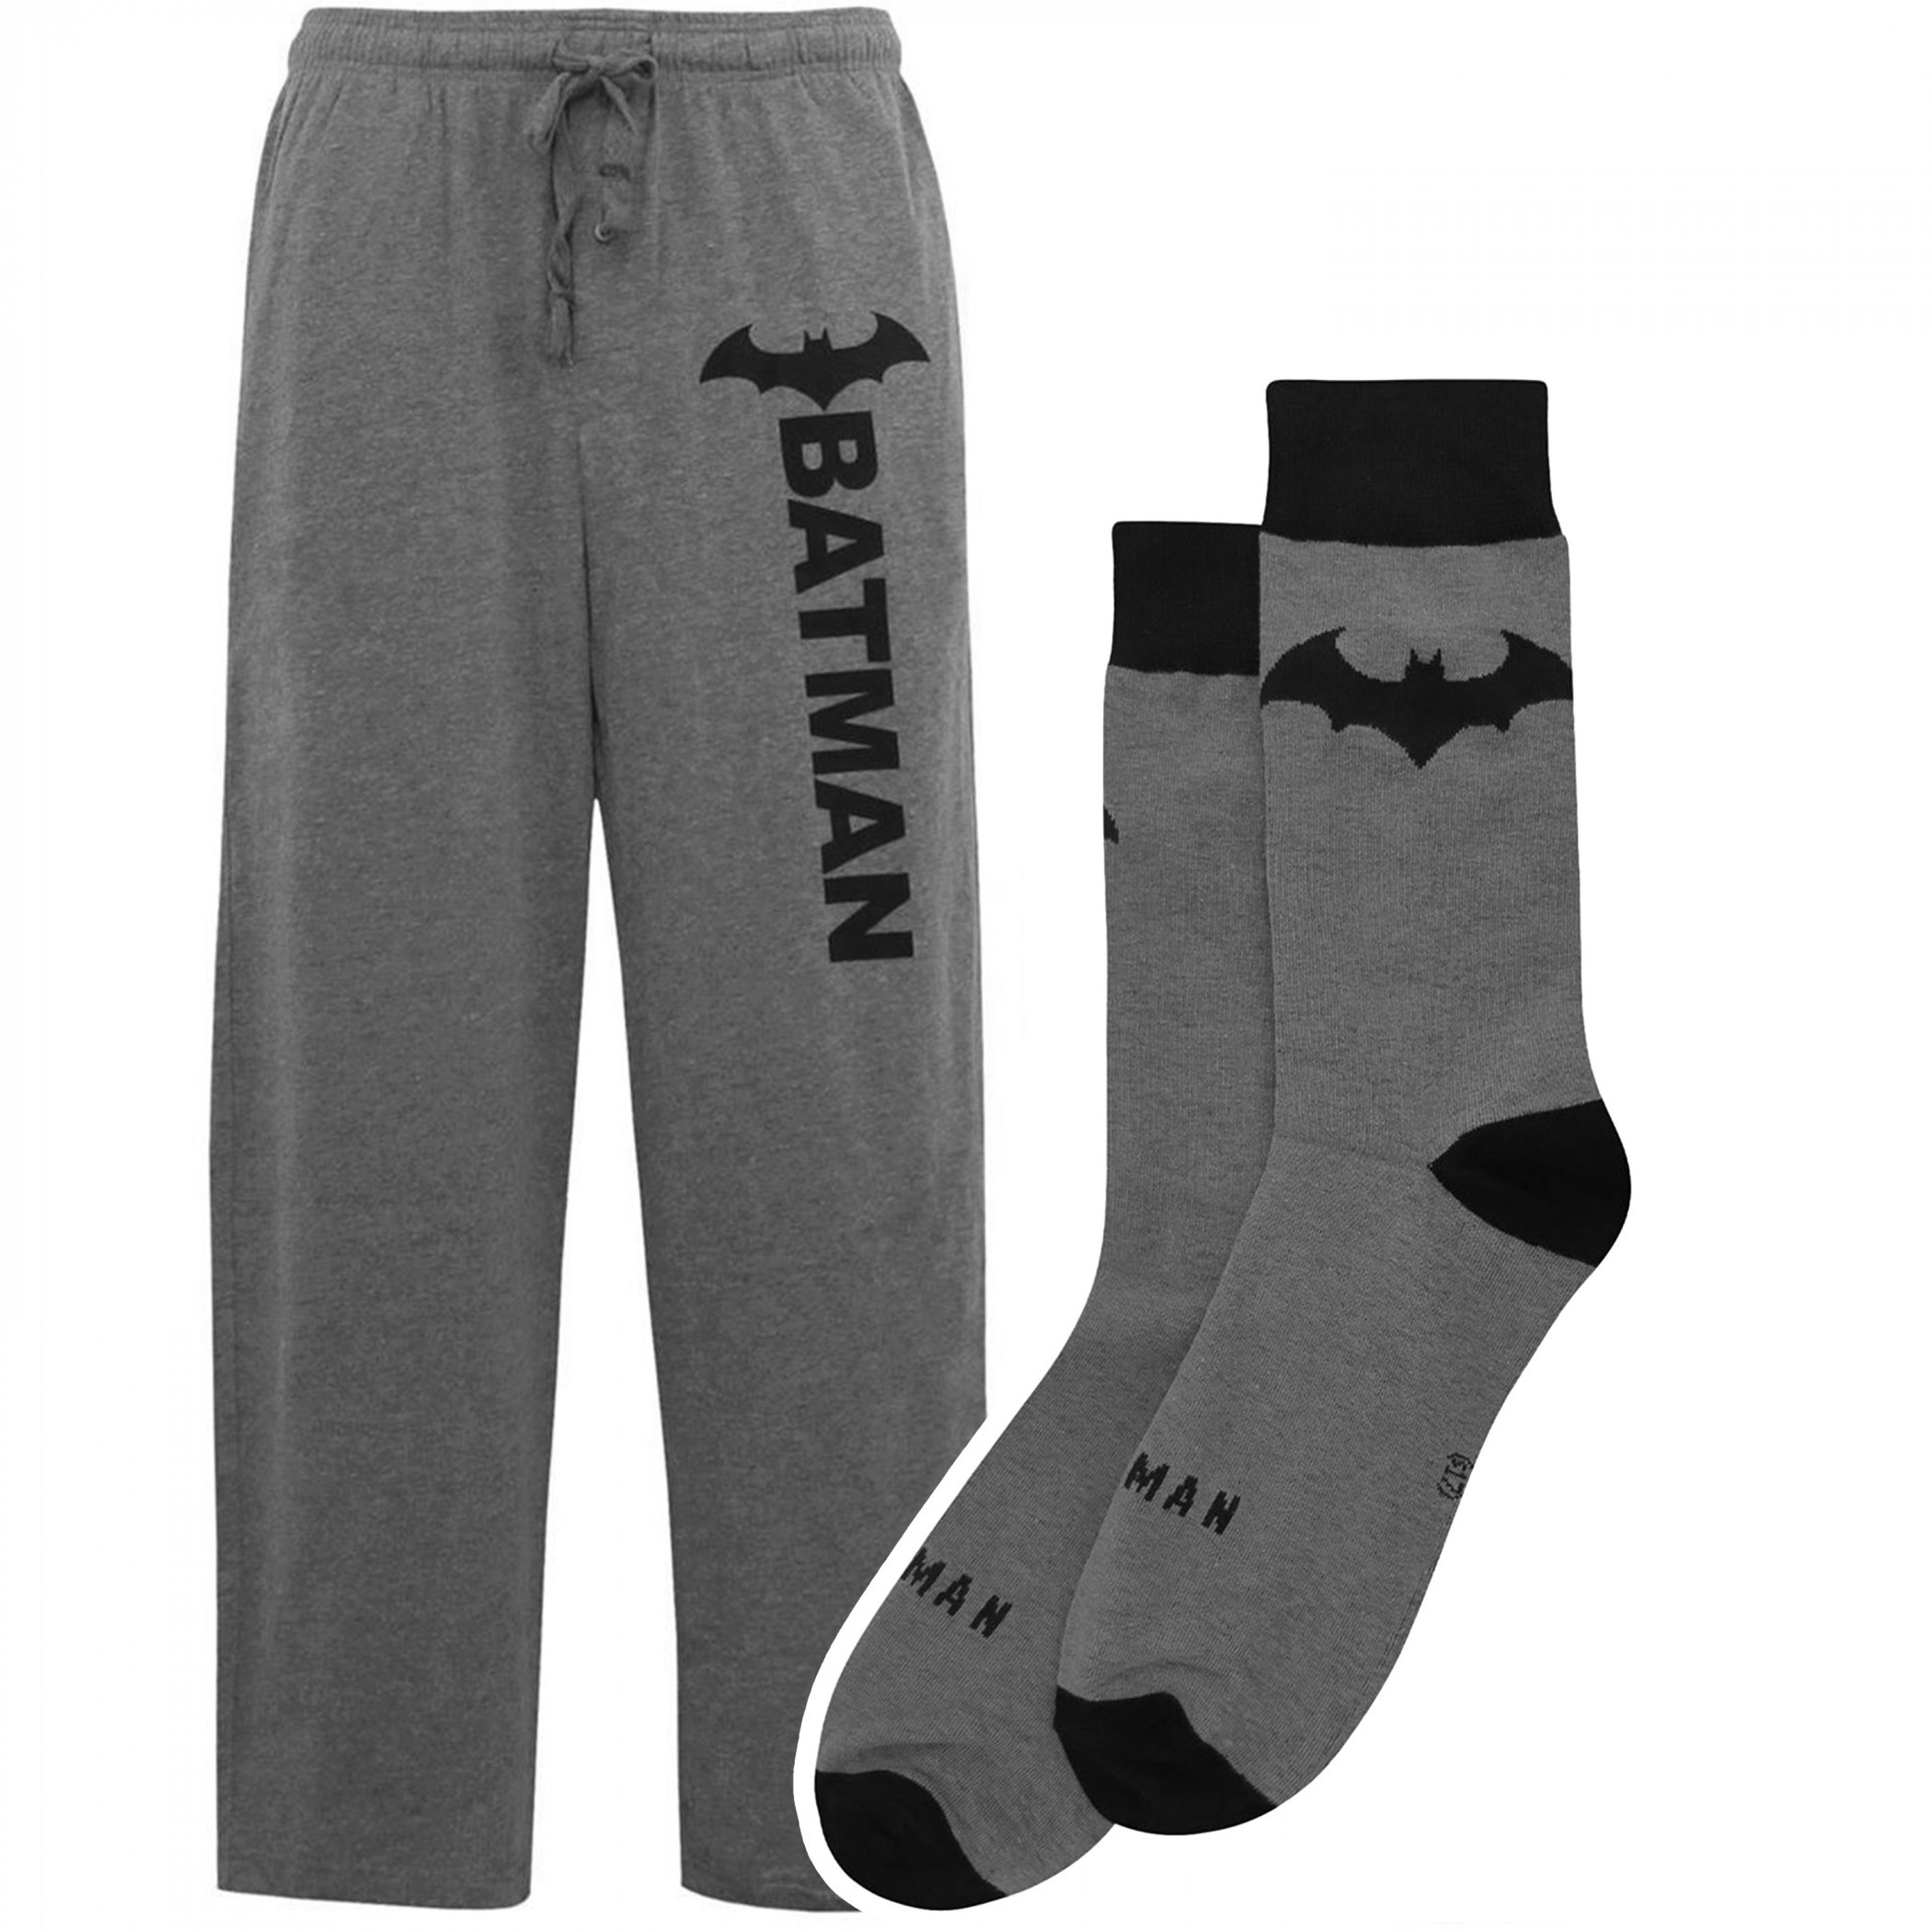 Batman Hush Logo Sleep Pants and Socks Bundle